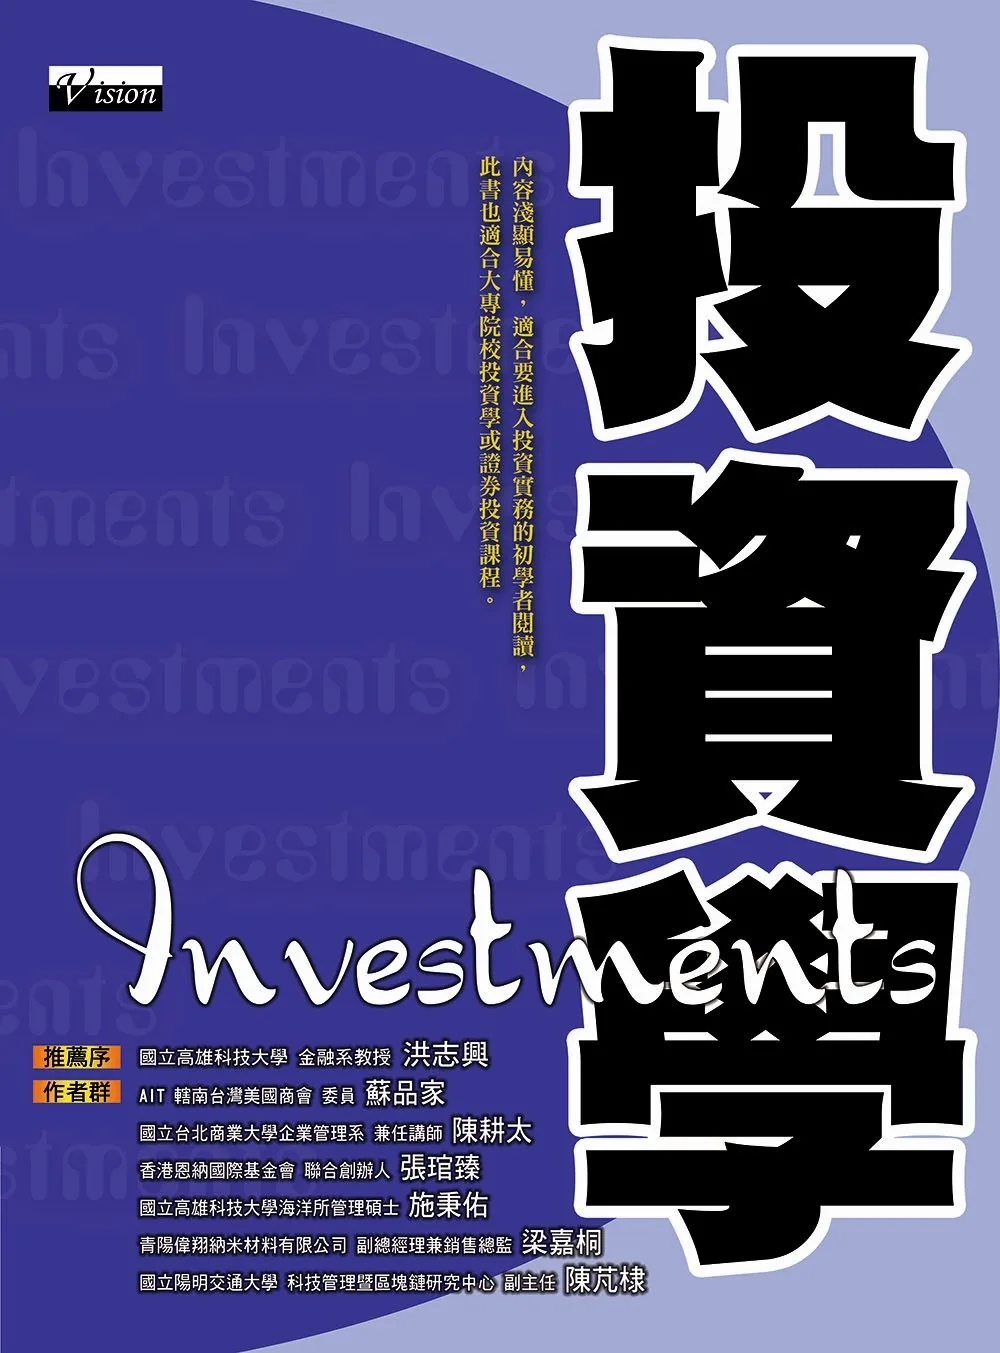 投資學：內容淺顯易懂，適合要進入投資實務的初學者閱讀，此書也適合大專院校投資學或證券投資課程。